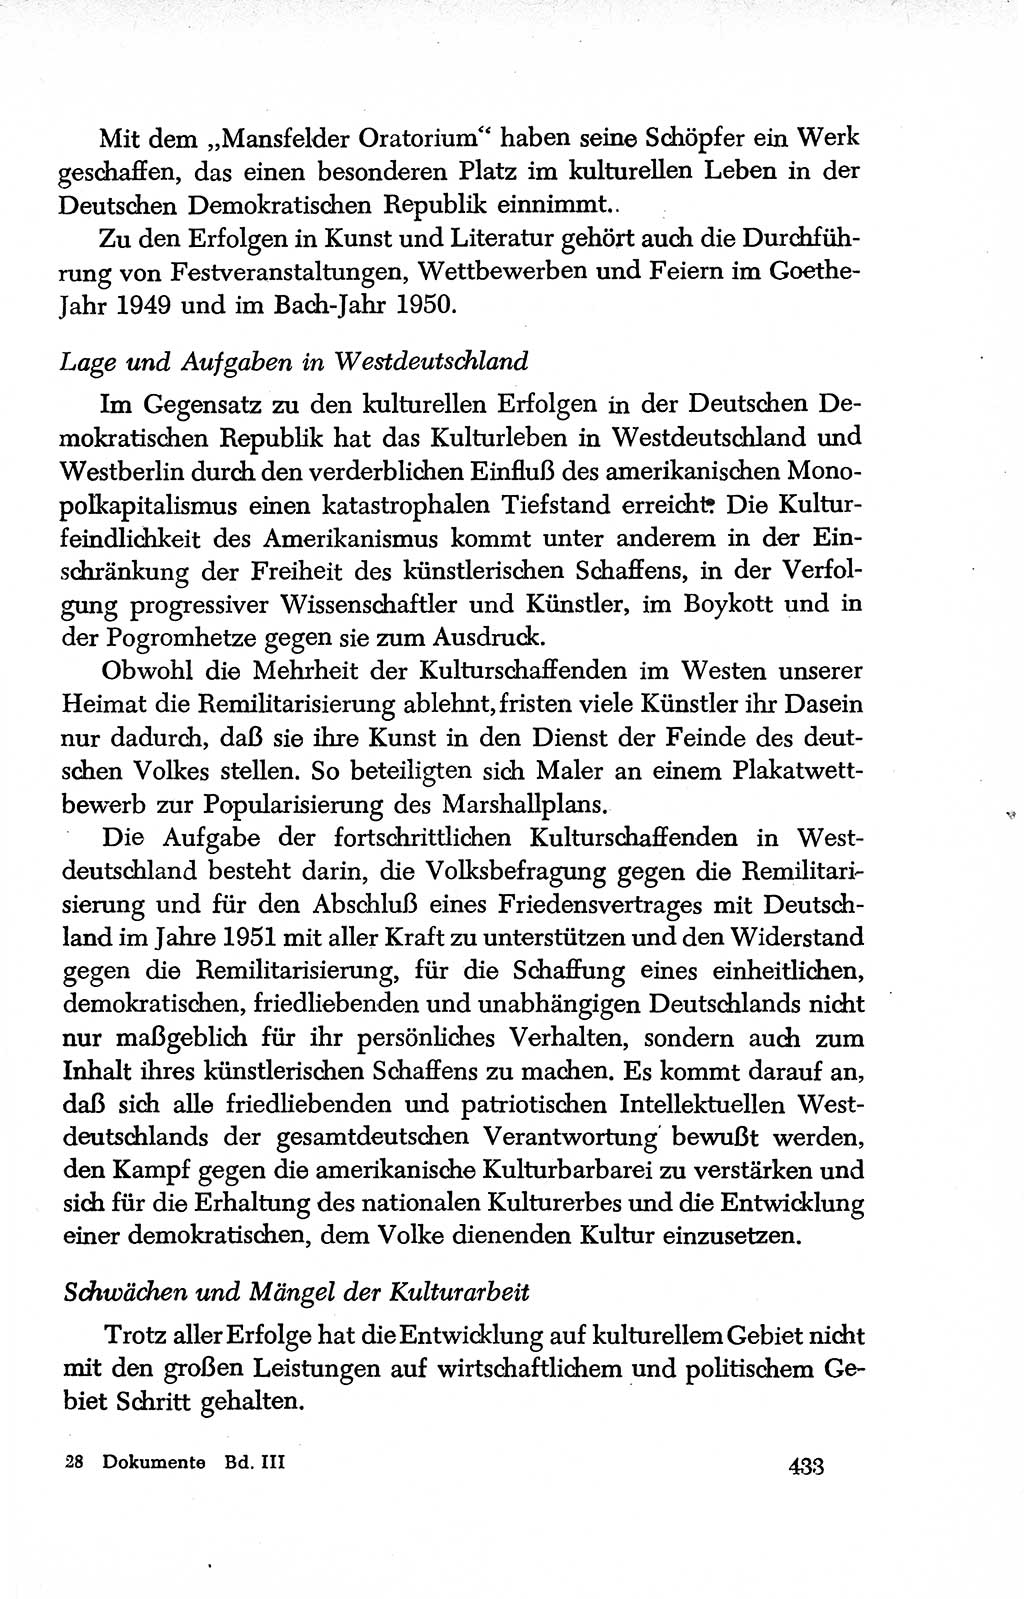 Dokumente der Sozialistischen Einheitspartei Deutschlands (SED) [Deutsche Demokratische Republik (DDR)] 1950-1952, Seite 433 (Dok. SED DDR 1950-1952, S. 433)